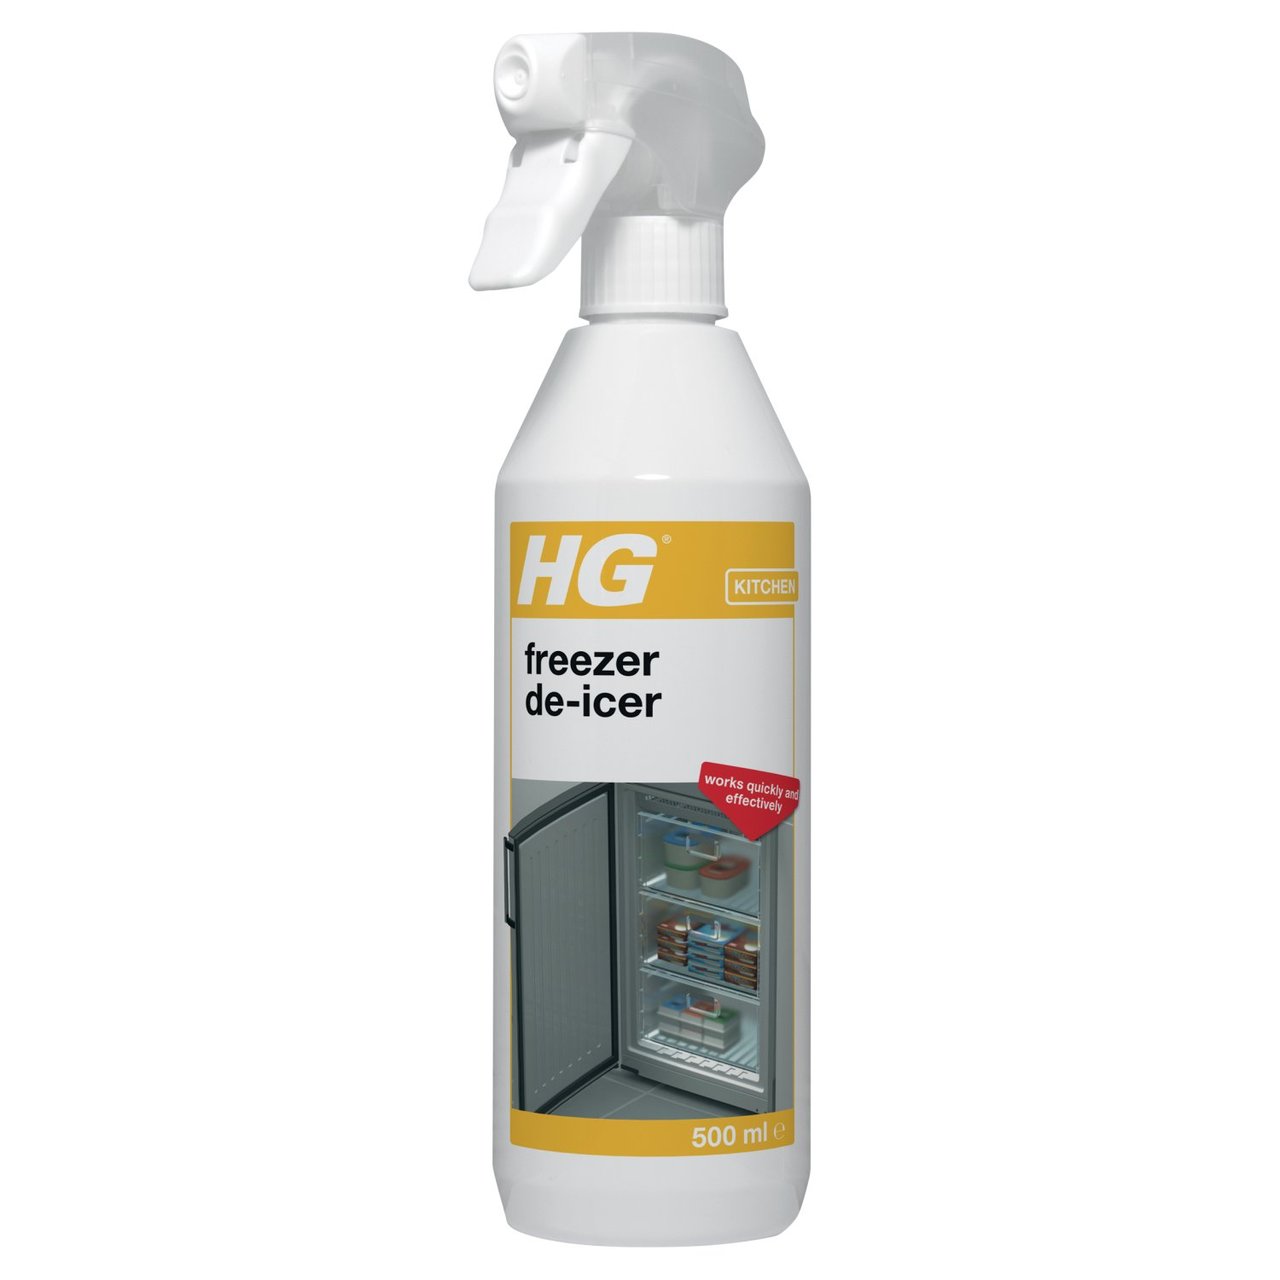 HG freezer de-icer - 500ml